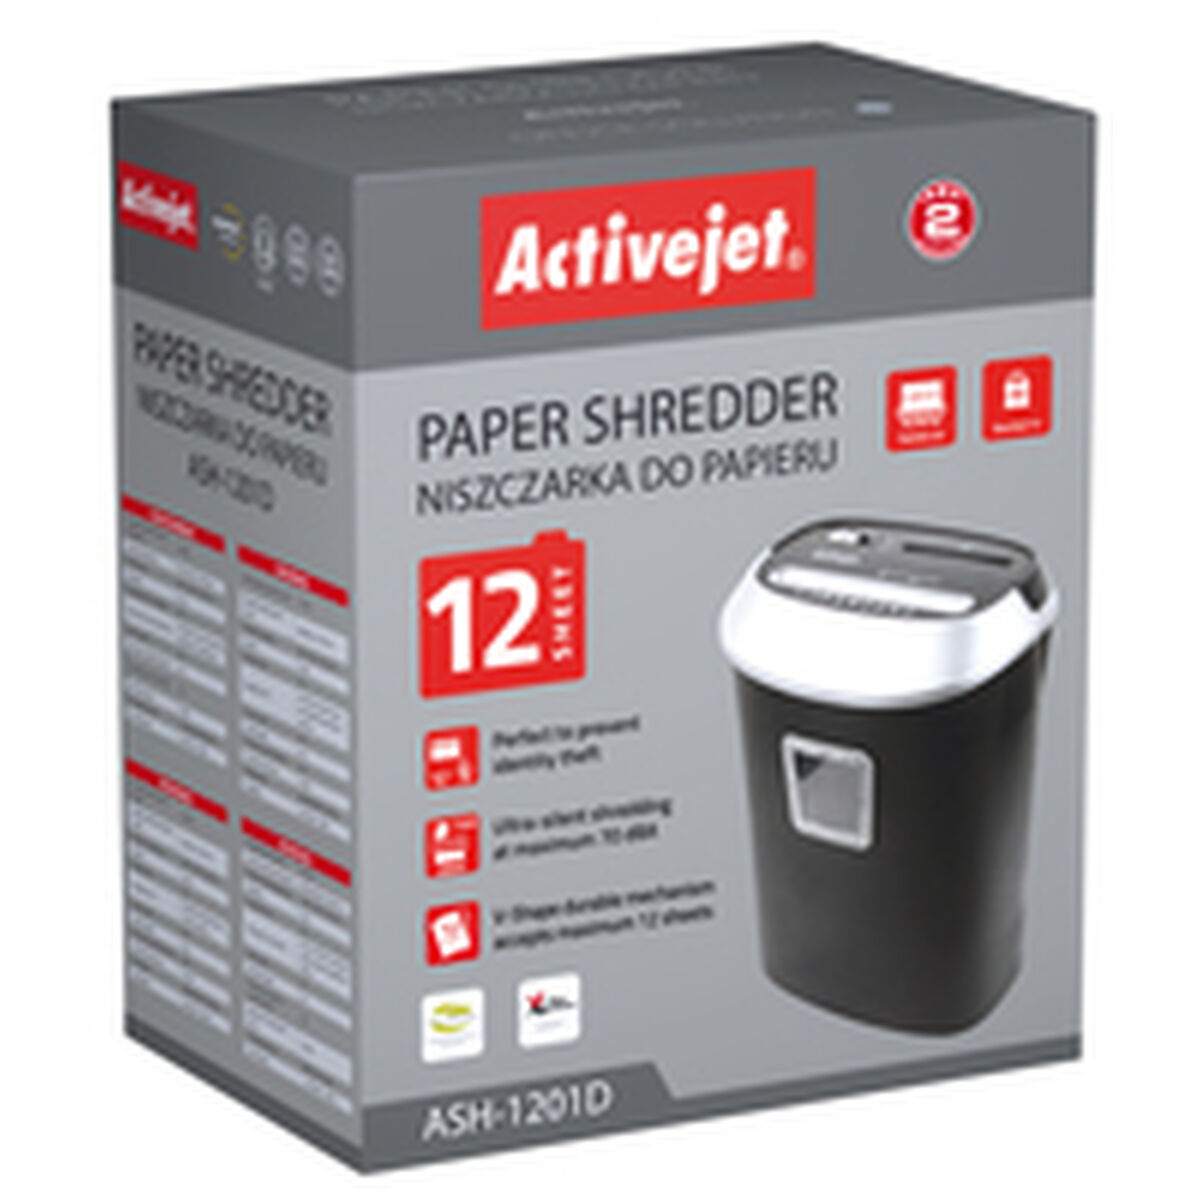 Paper Shredder Activejet ASH-1201D